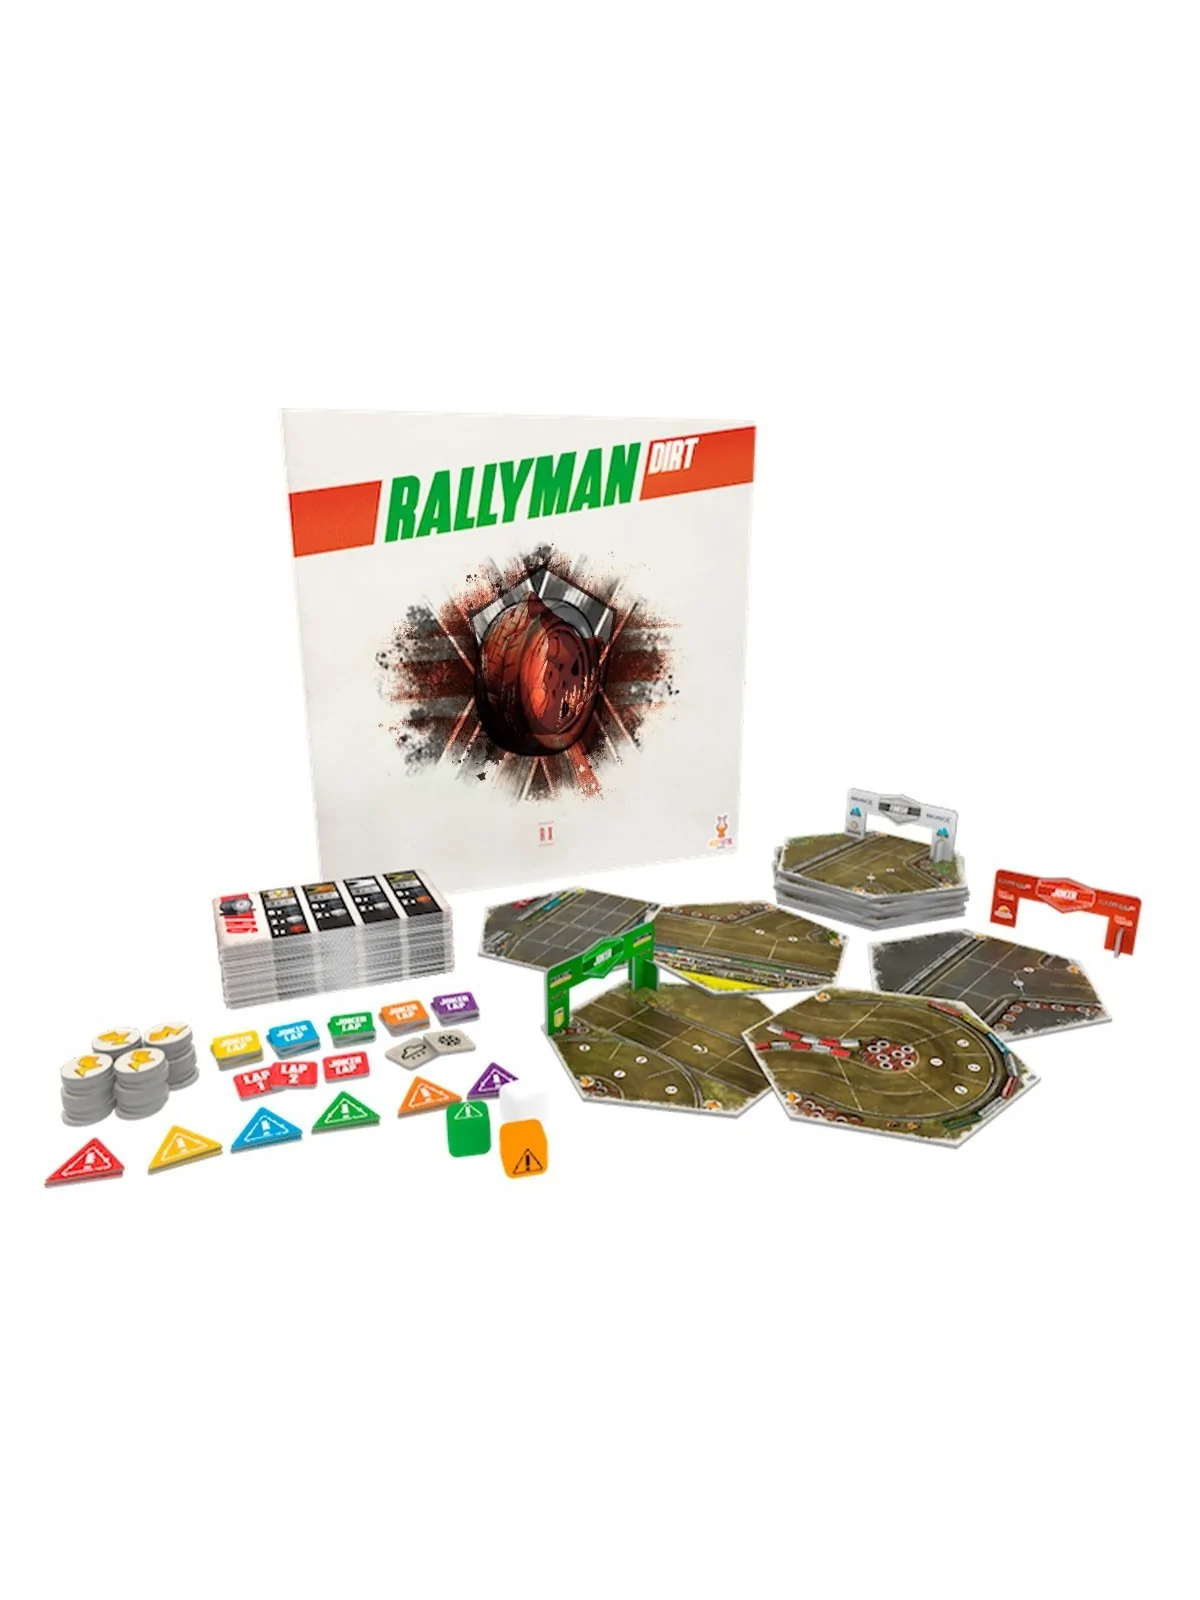 Comprar Rallyman: Dirt: RX barato al mejor precio 22,50 € de Devir